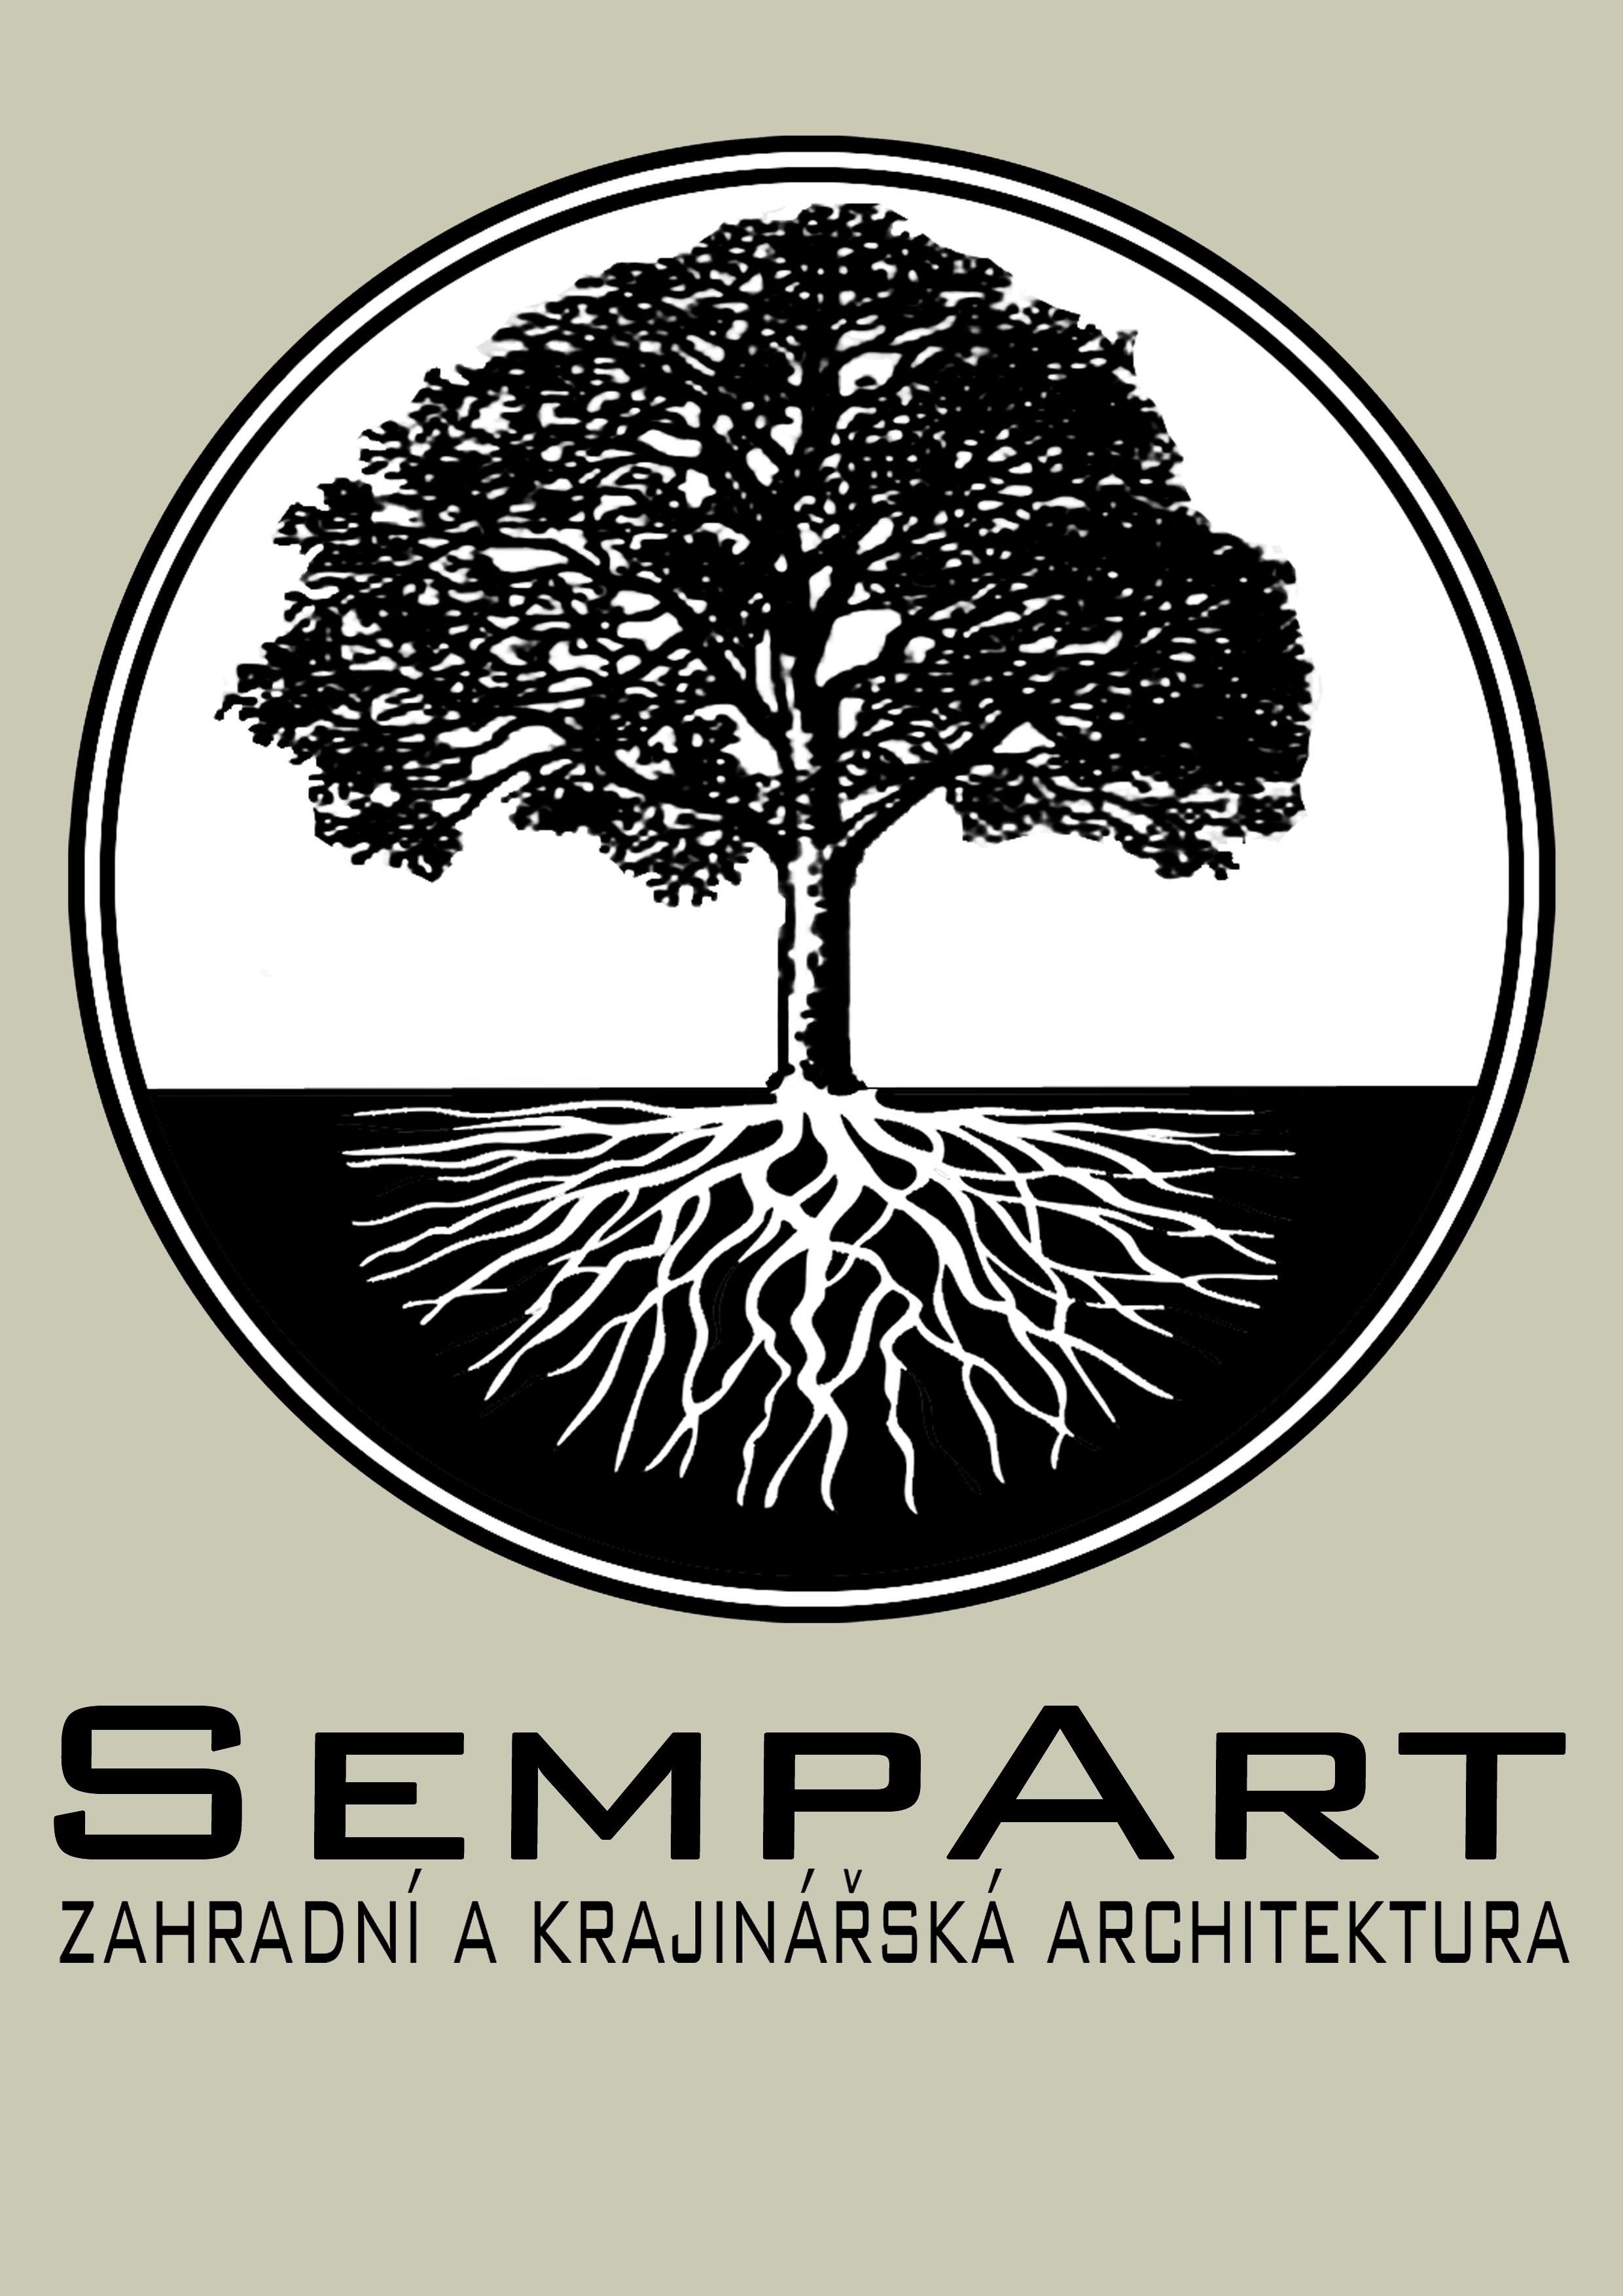 Sempart